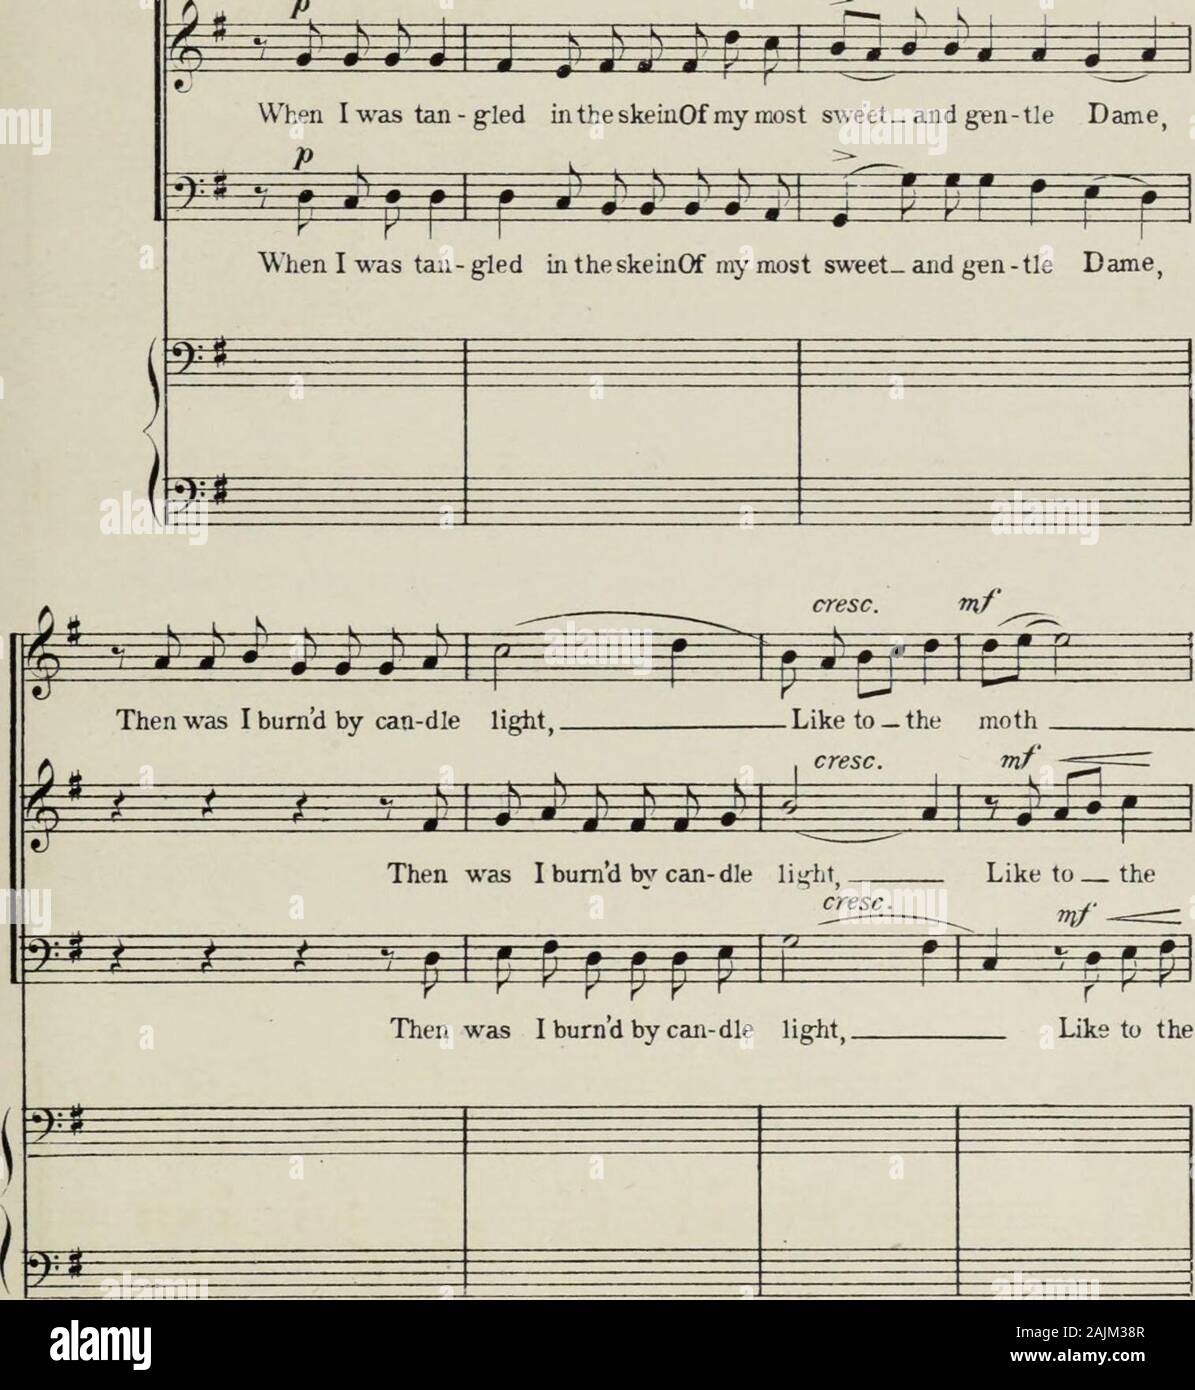 Vier Chöre in alten Sonatenform für die drei Männer stimmen, mit Präludien und Intermezzi für Harfe, Orgel oder Klavier. Vier Chöre CHARLES DORLEANSTrans. Gertrude Maud Norman 15 An KURT SCHINDLER, WENN ICH VERWIRRT WAR IN DEN STRANG CARLOS SALZEDO New York - Der H.W. Grau Co., alleinige Ag - ents für NOVELLO & Co., Limited - LondonVivo (J=152) Wenn ich war Tan-gled in der skeinOf meine Süßen und sanften Dame, S. Copyright, 1918, von der H.W. Grau Co., die fliegt durch die Nacht: P. Ich habe Erröten mit dem Schein-ing redP r "f p p i j^/* iJ) ijkj J)^^ die Motten, die fliegt durch die Nacht: Ich habe Erröten mit dem Schein-ing rot Motte, Fl Stockfoto